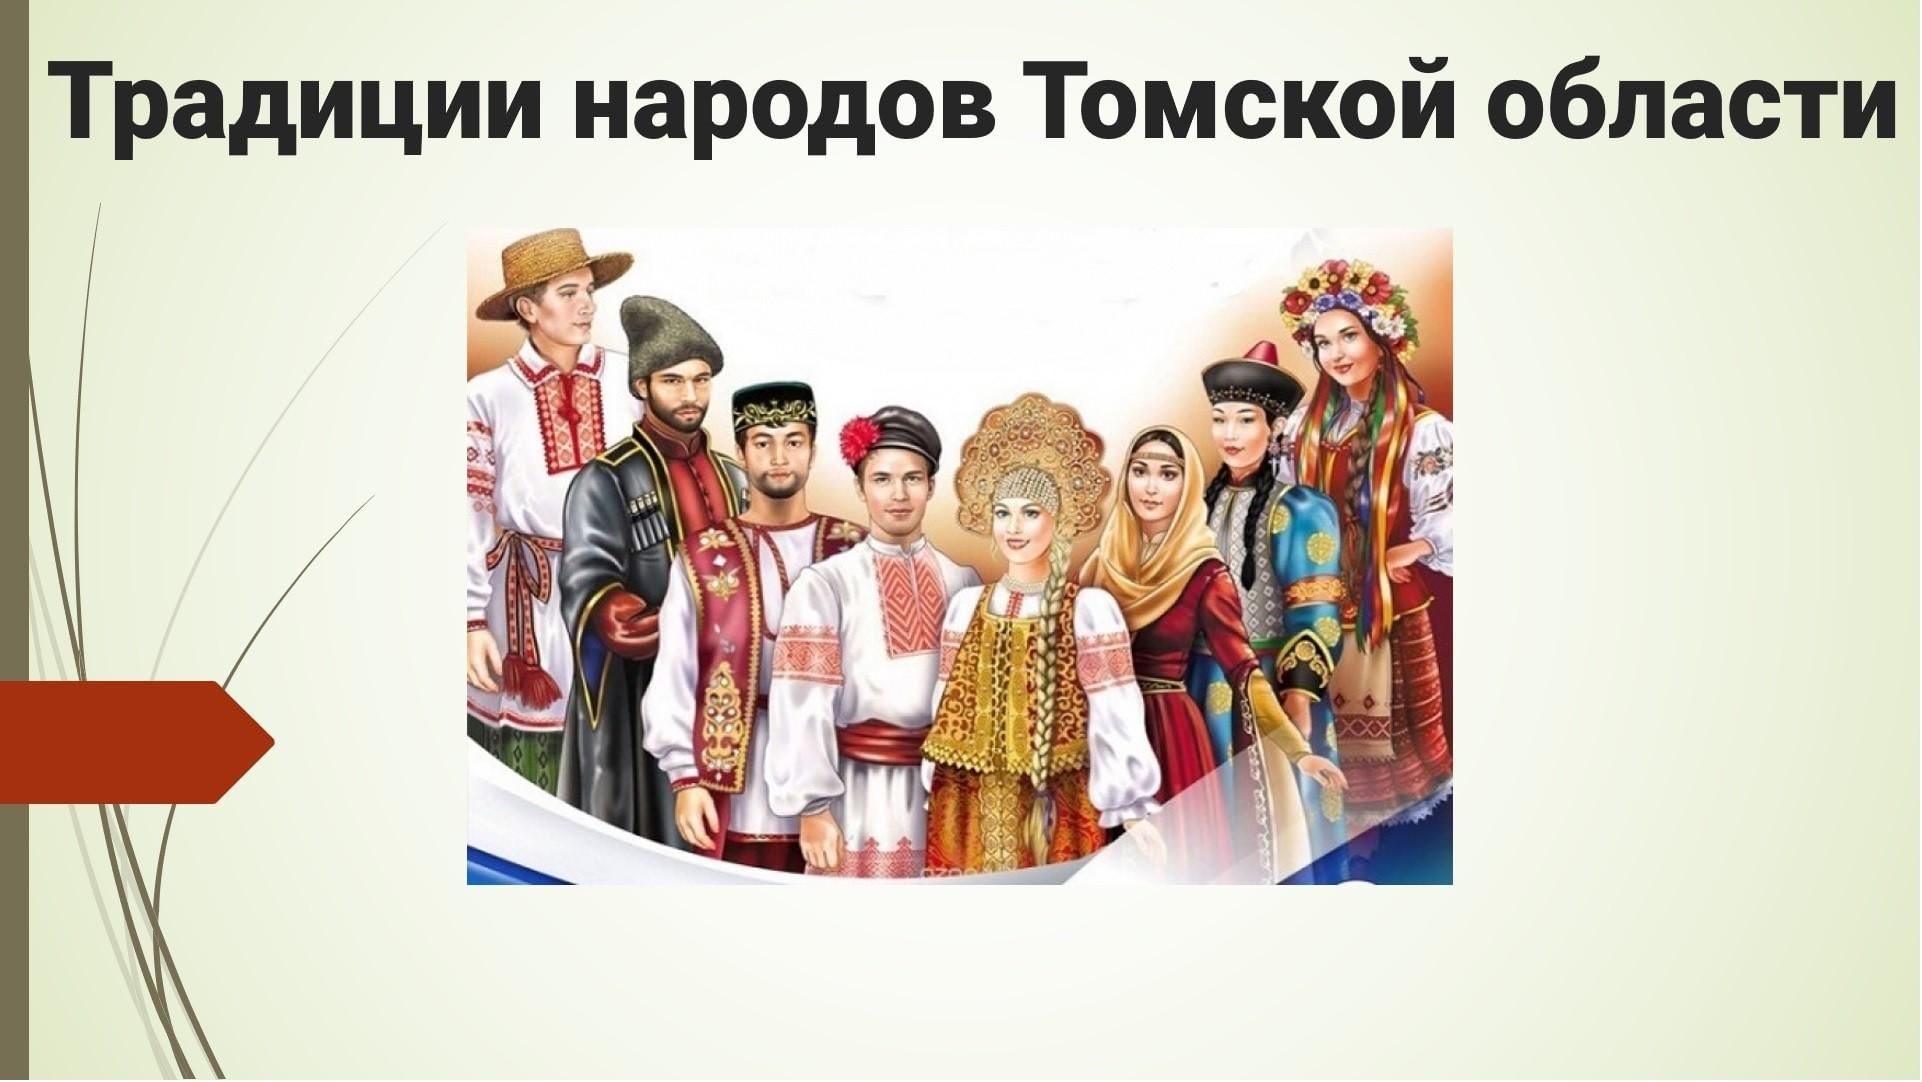 Традиции народов Томской области